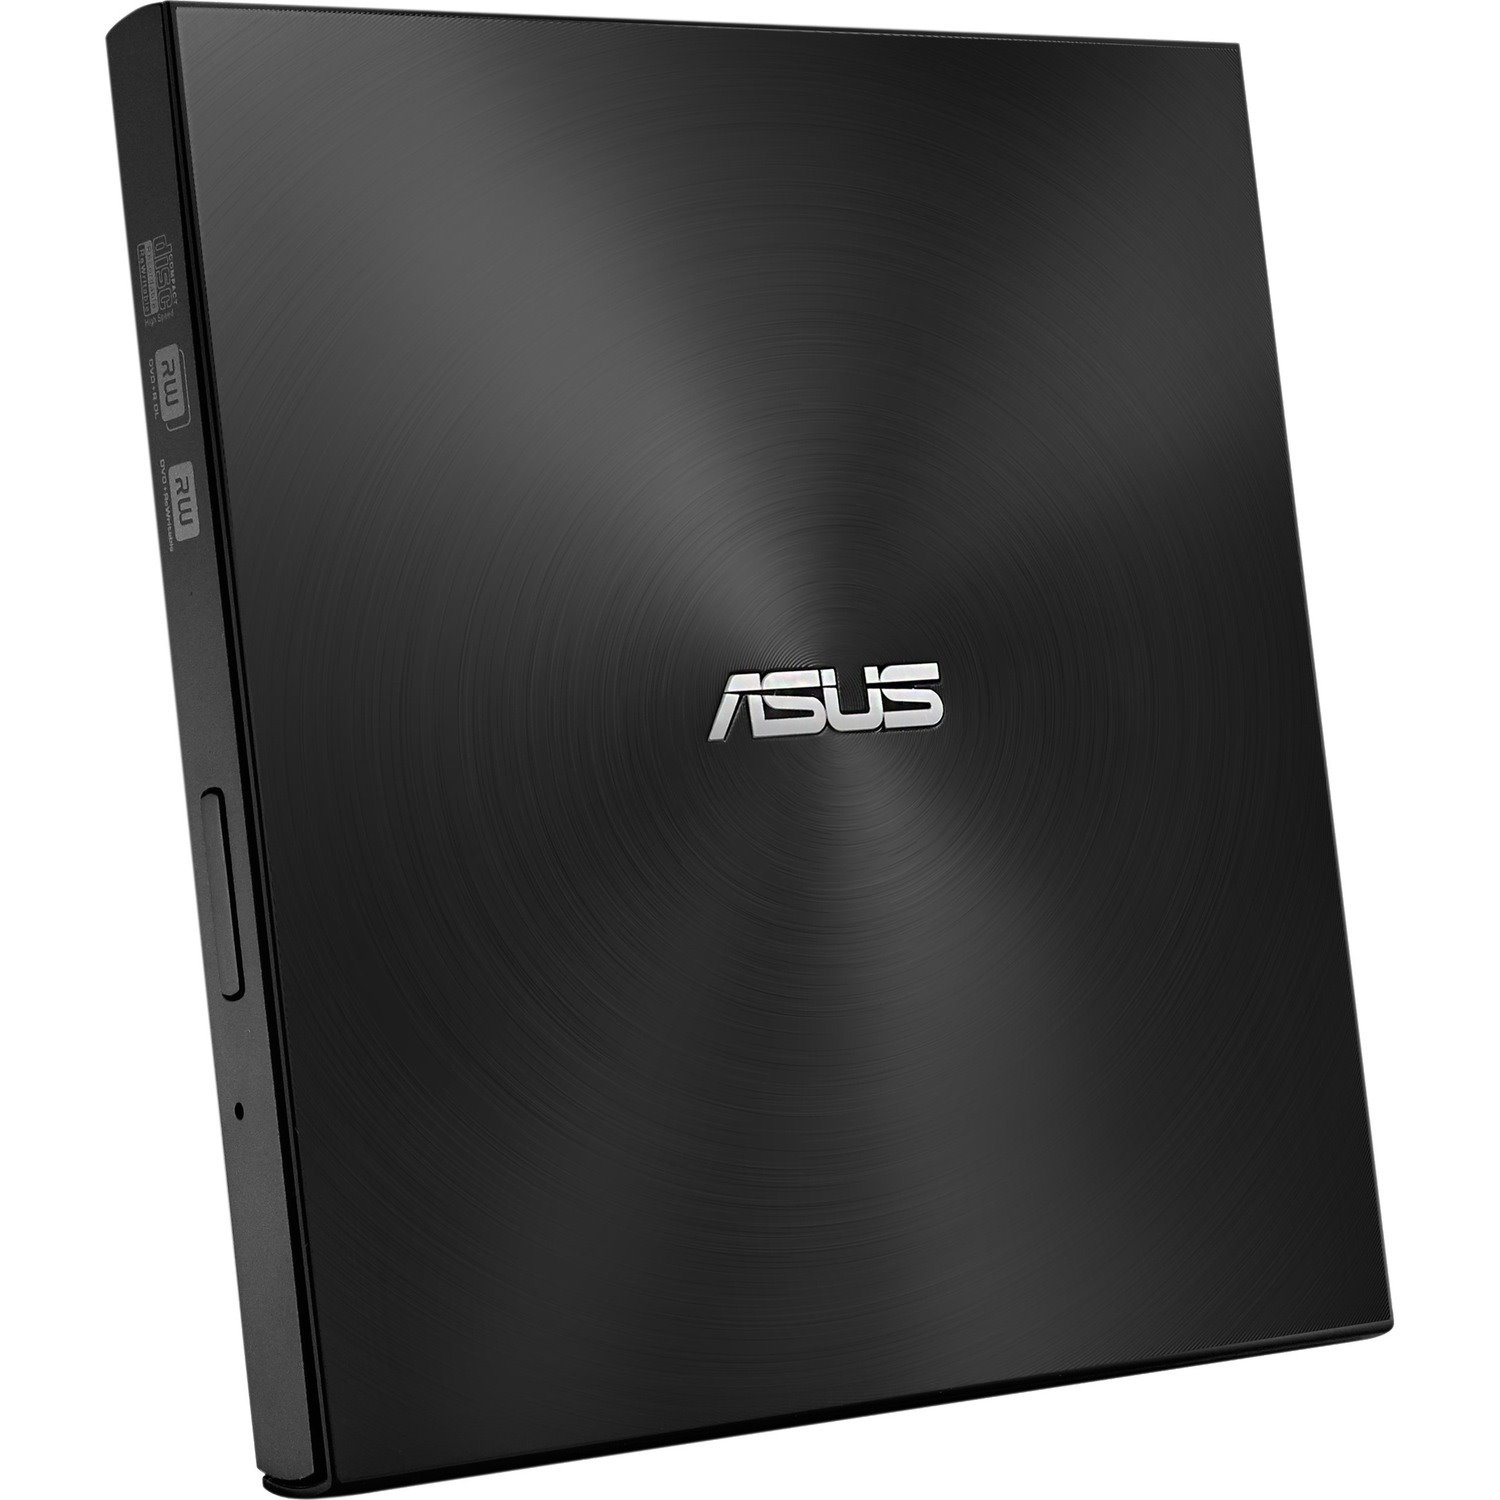 Asus SDRW-08U7M-U DVD-Writer - External - Black